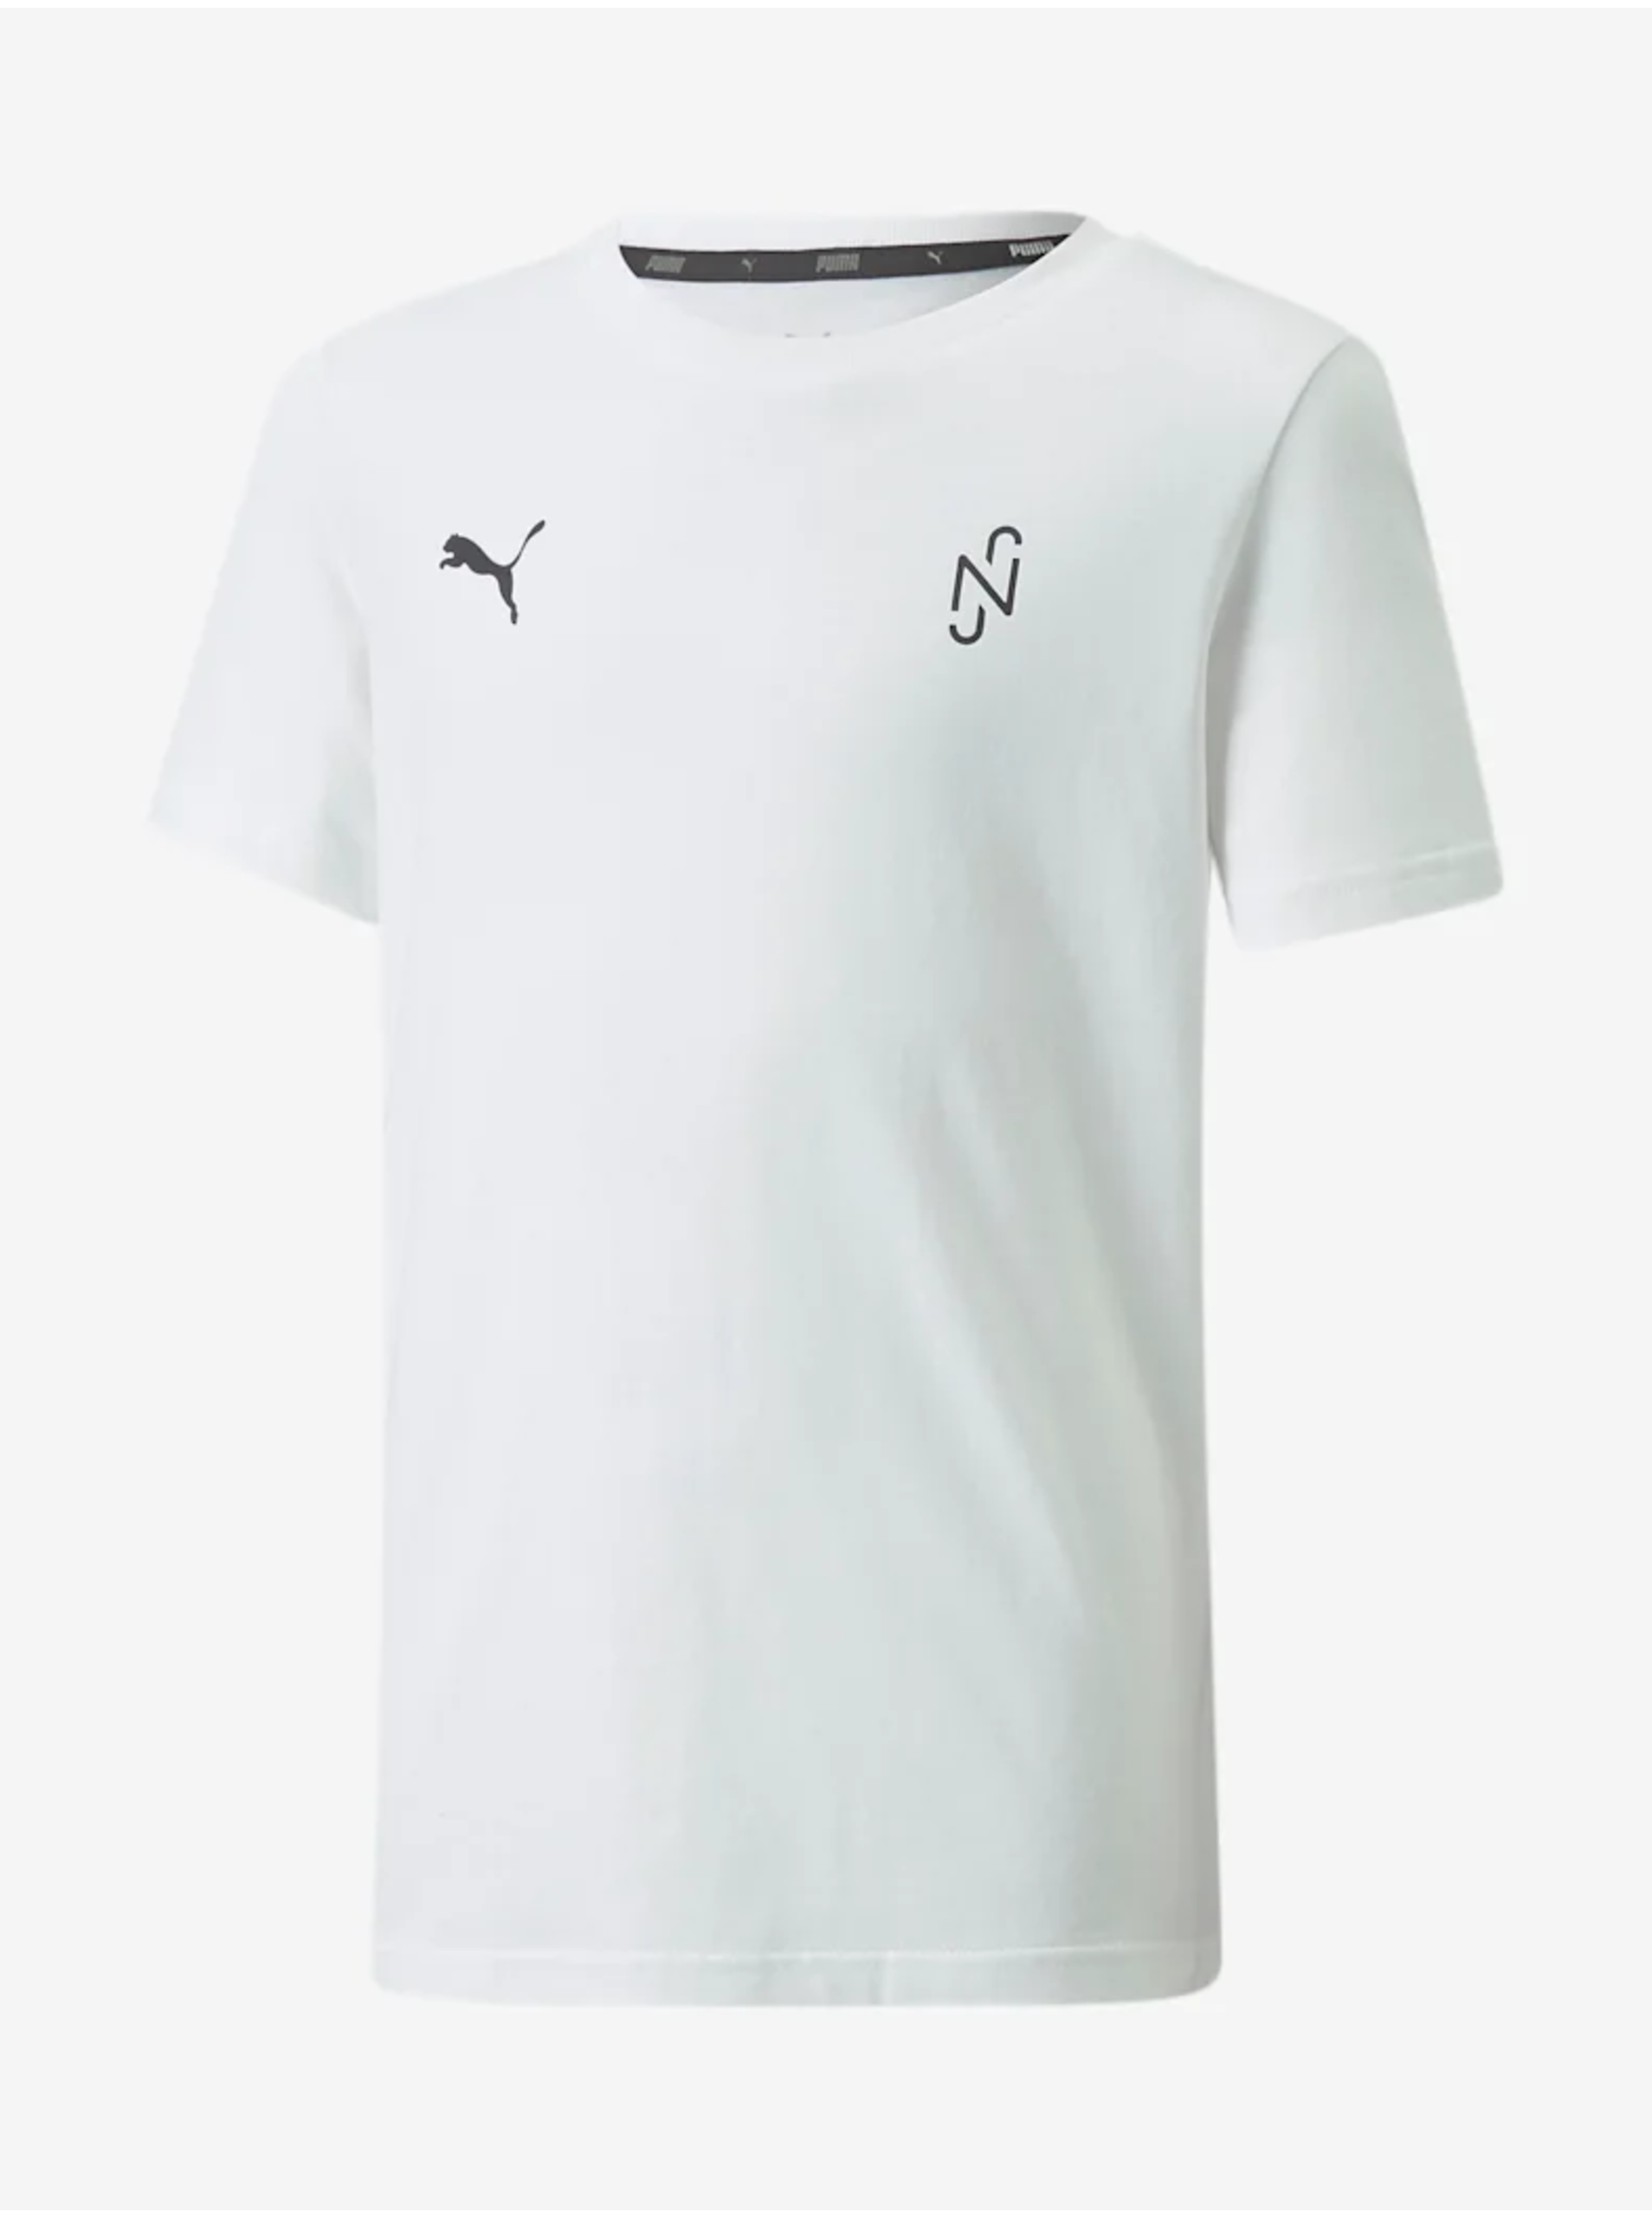 Lacno Biele chlapčenské športové tričko s potlačou na chrbte Puma Neymar